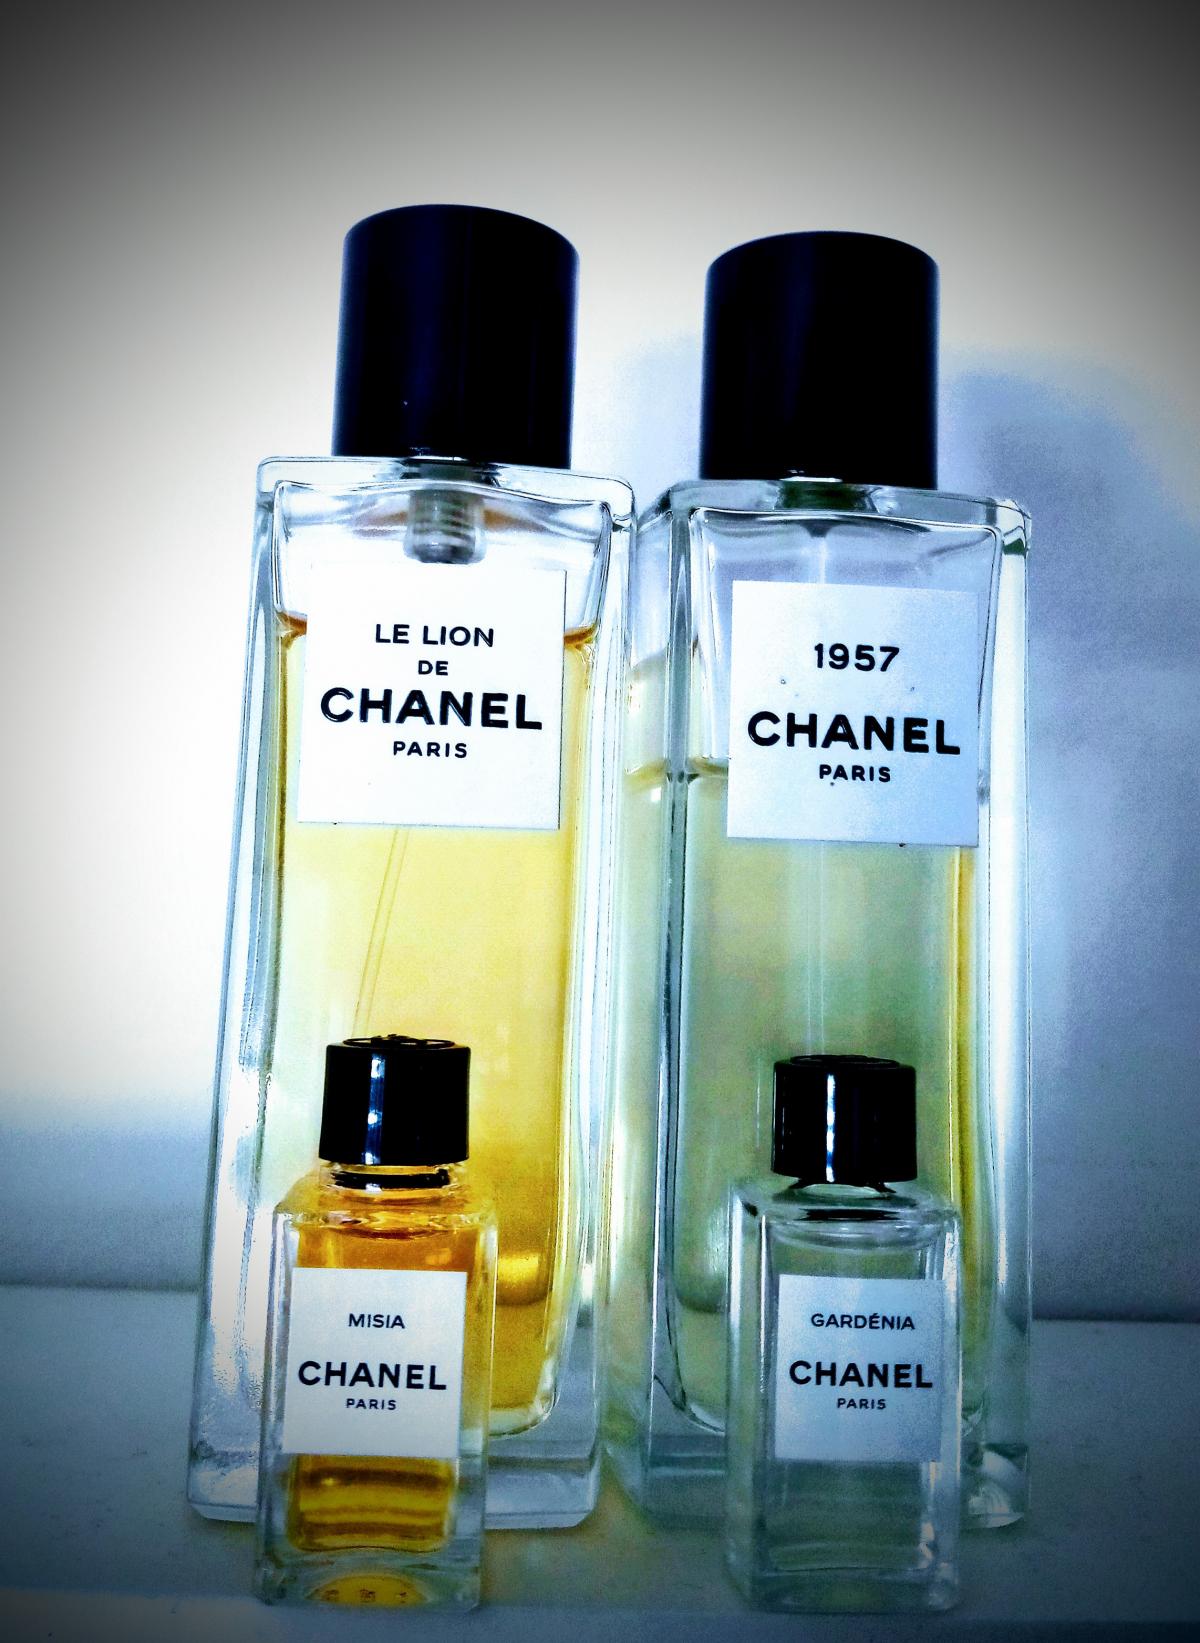 Chanel 1957 Chanel parfum - een nieuwe geur voor dames en heren 2019